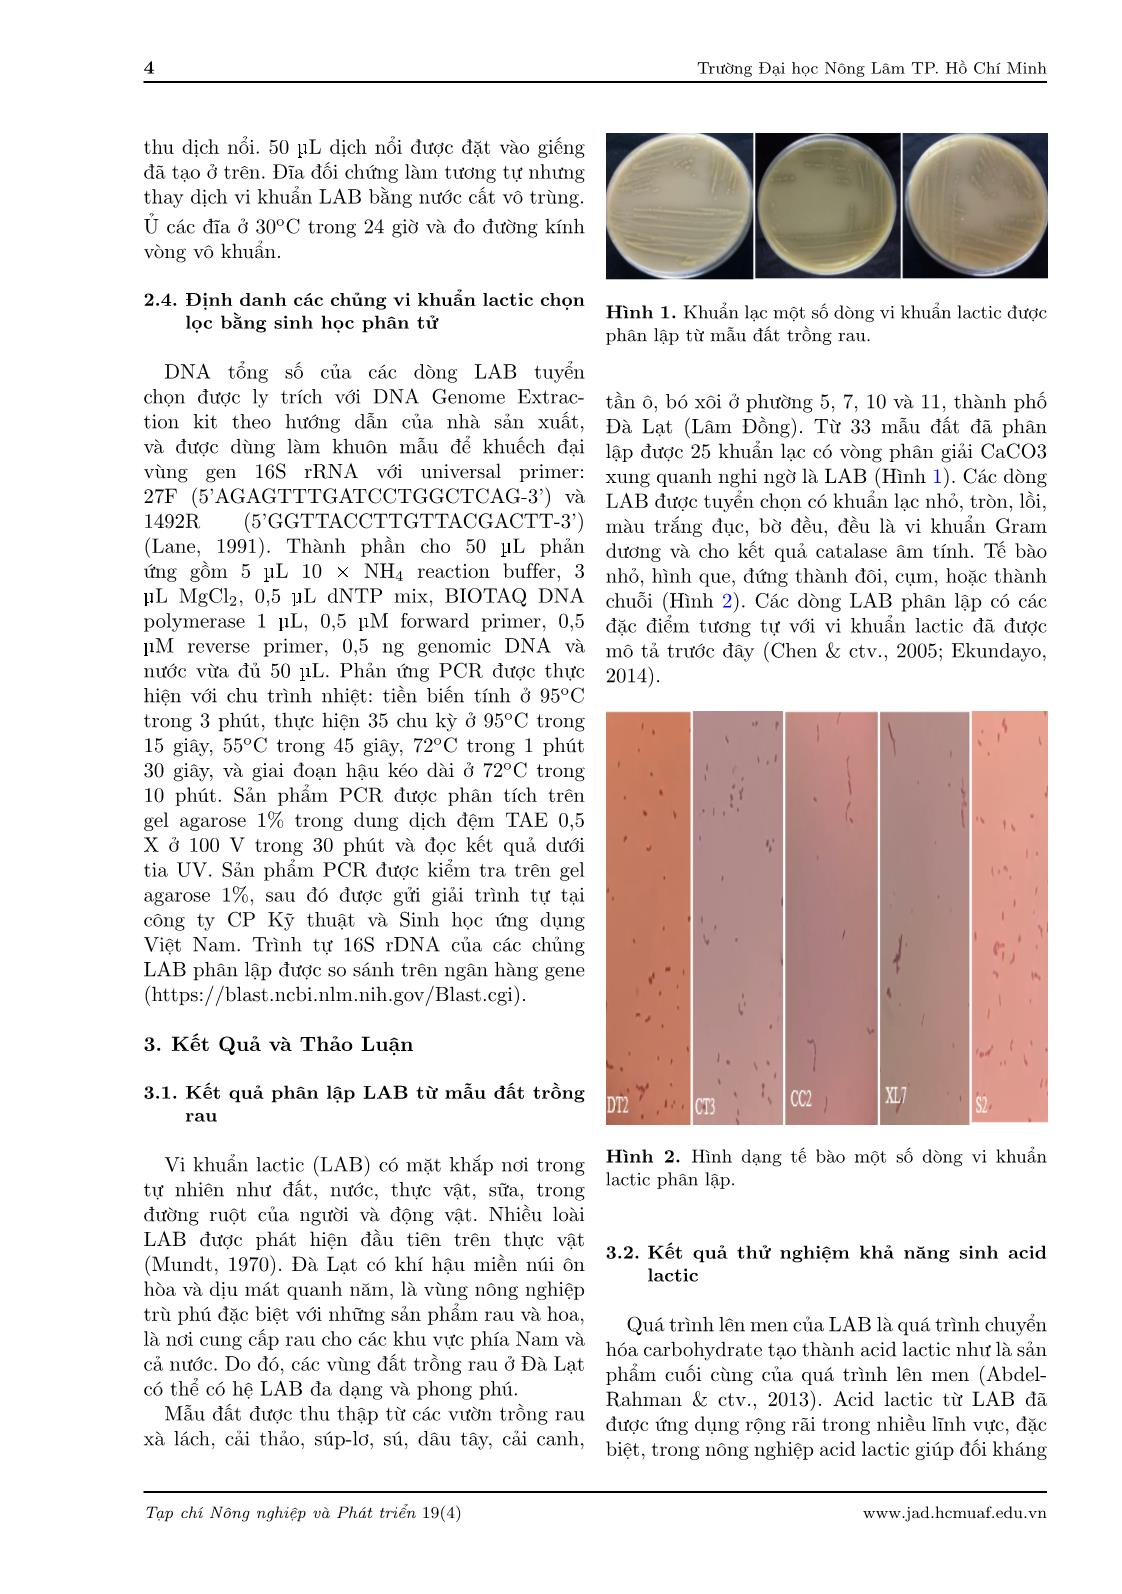 Phân lập và xác định vi khuẩn lactic từ đất trồng rau tại Đà Lạt, Lâm Đồng trang 4